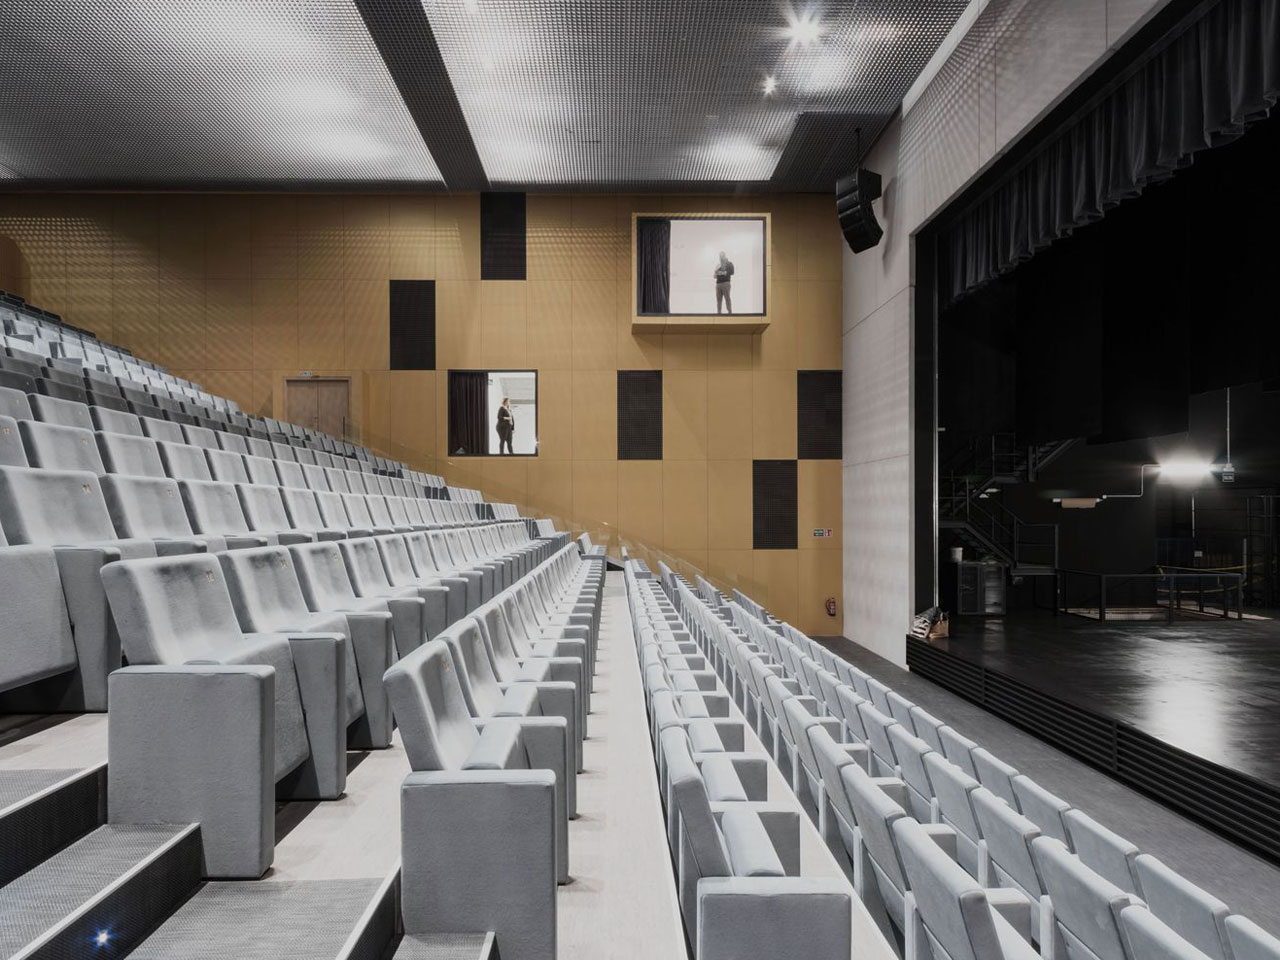 Arquitectura y naturaleza se dan la mano en la Casa de la Música y el Teatro de Arroyo, en Valladolid